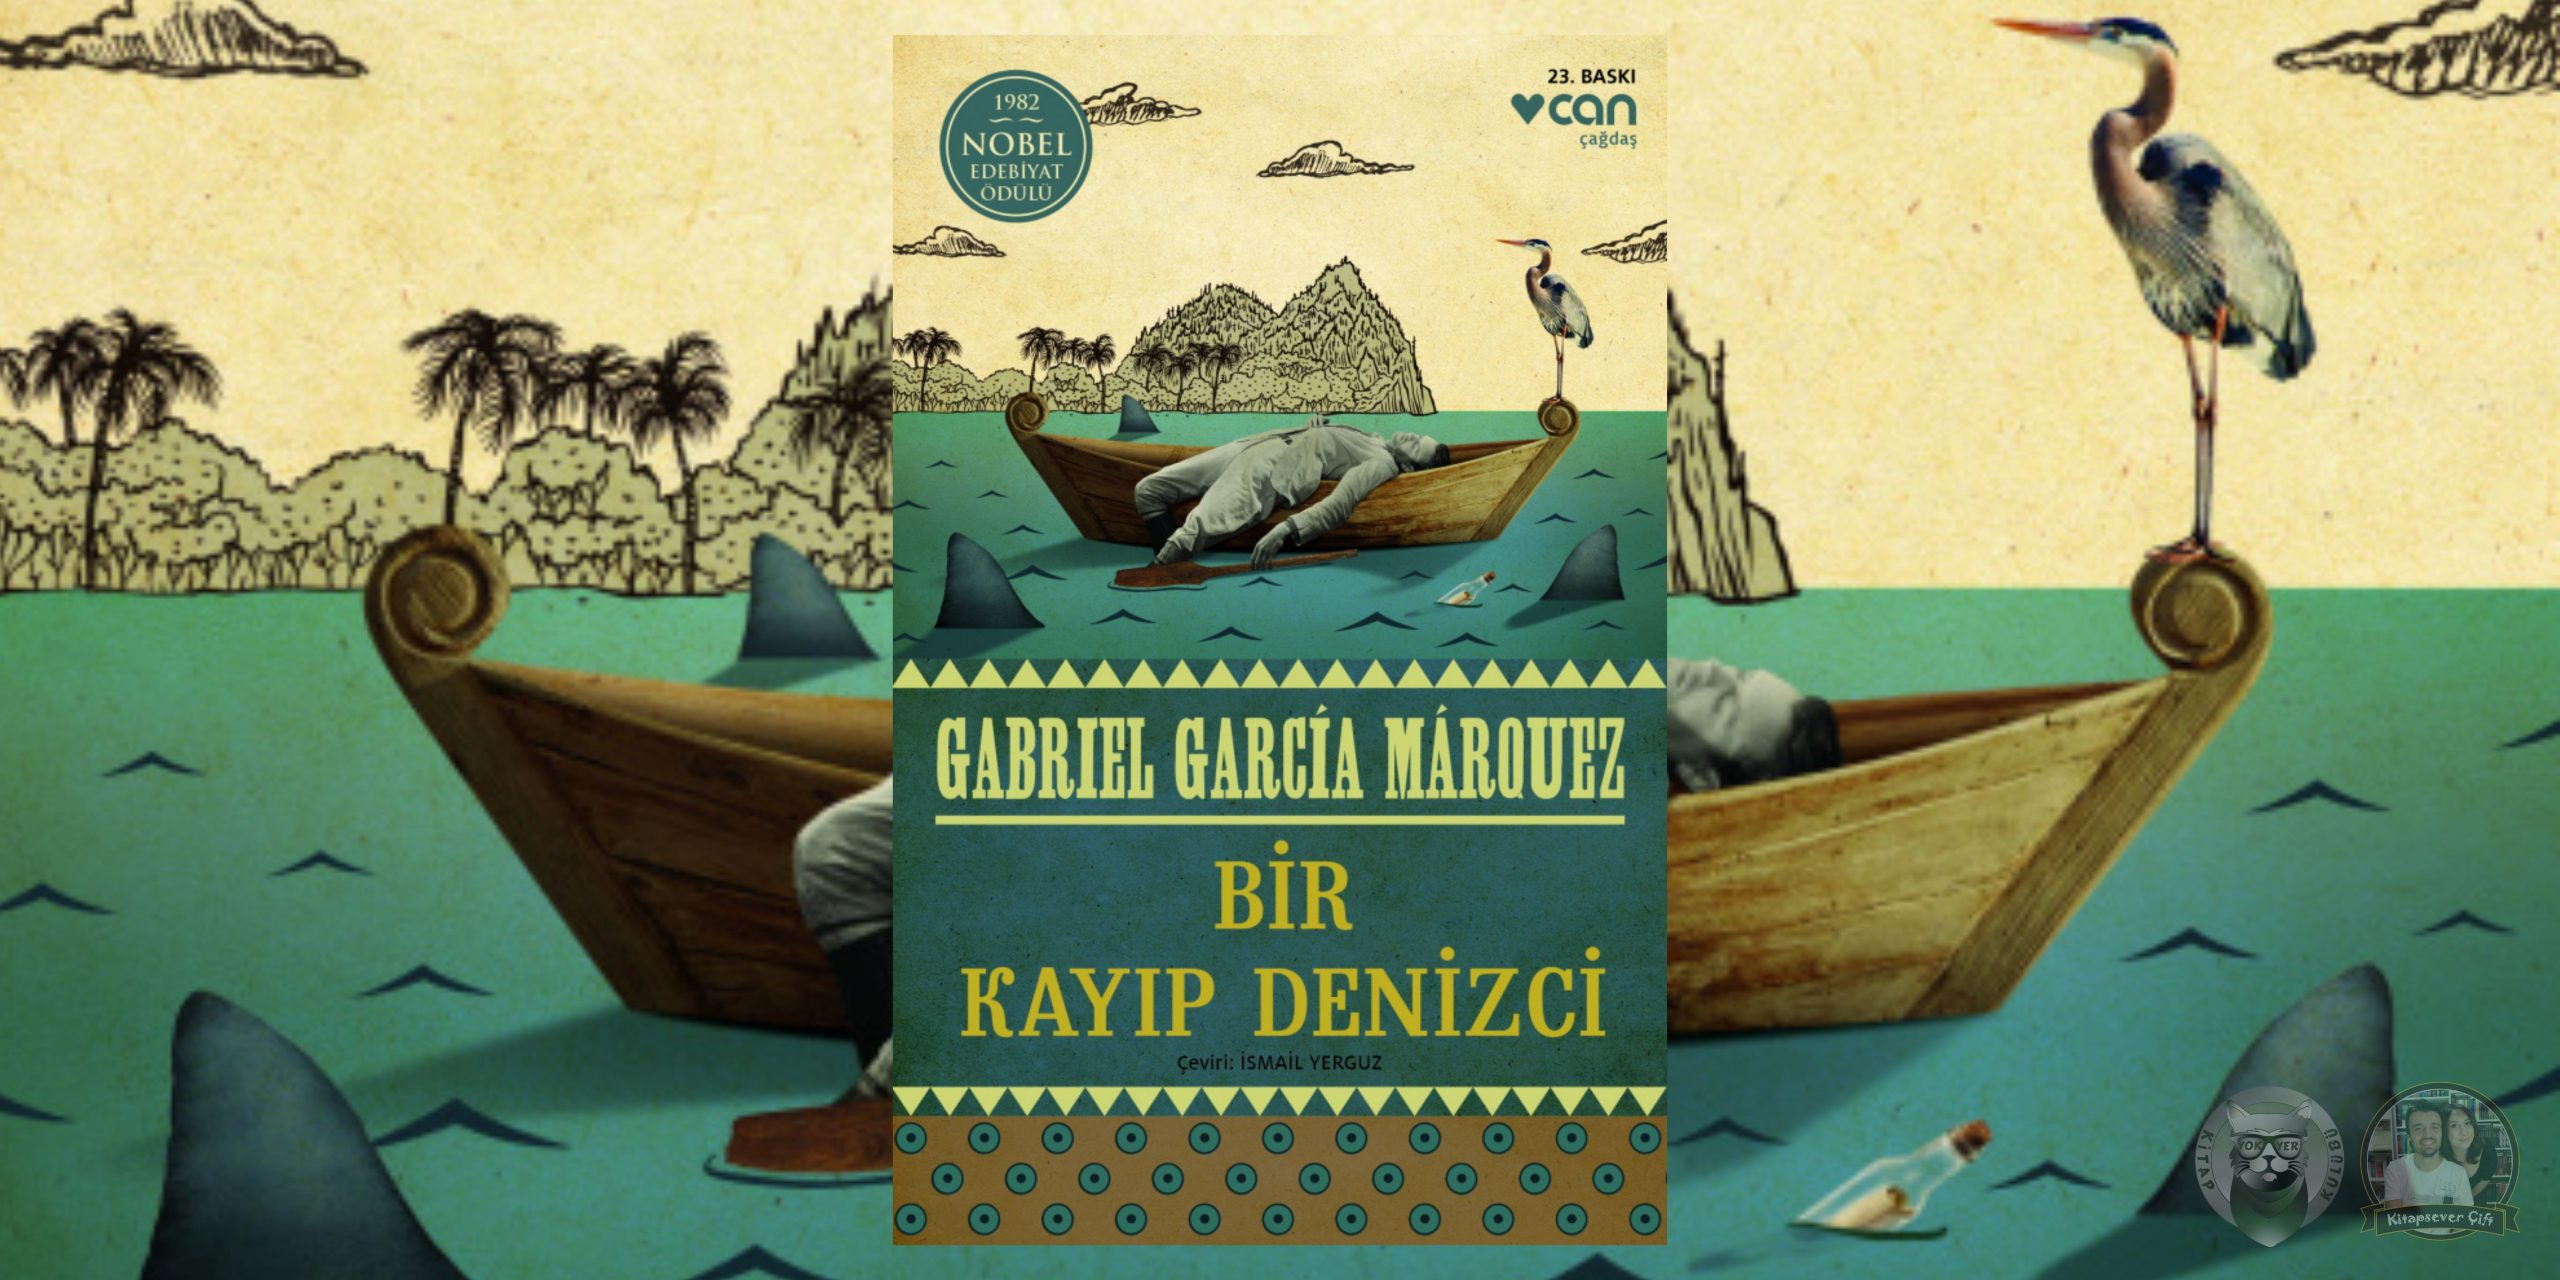 gabriel garcia marquez kitapları 4 – bir kayip denizci scaled